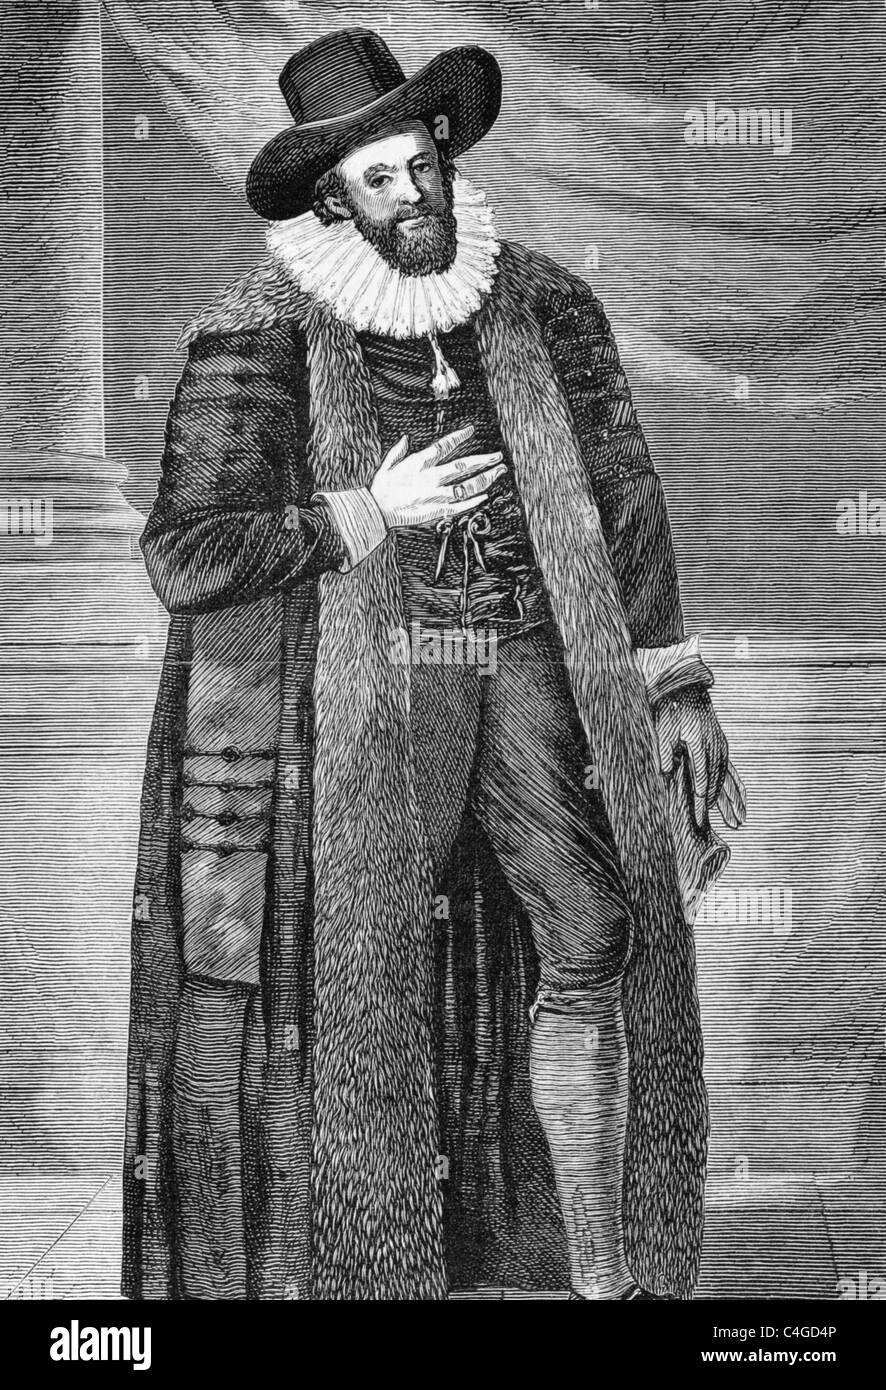 Edward ALLEYN (1566-1626) sobre el grabado a partir de 1870. El actor inglés que fue una importante figura del teatro isabelino. Foto de stock